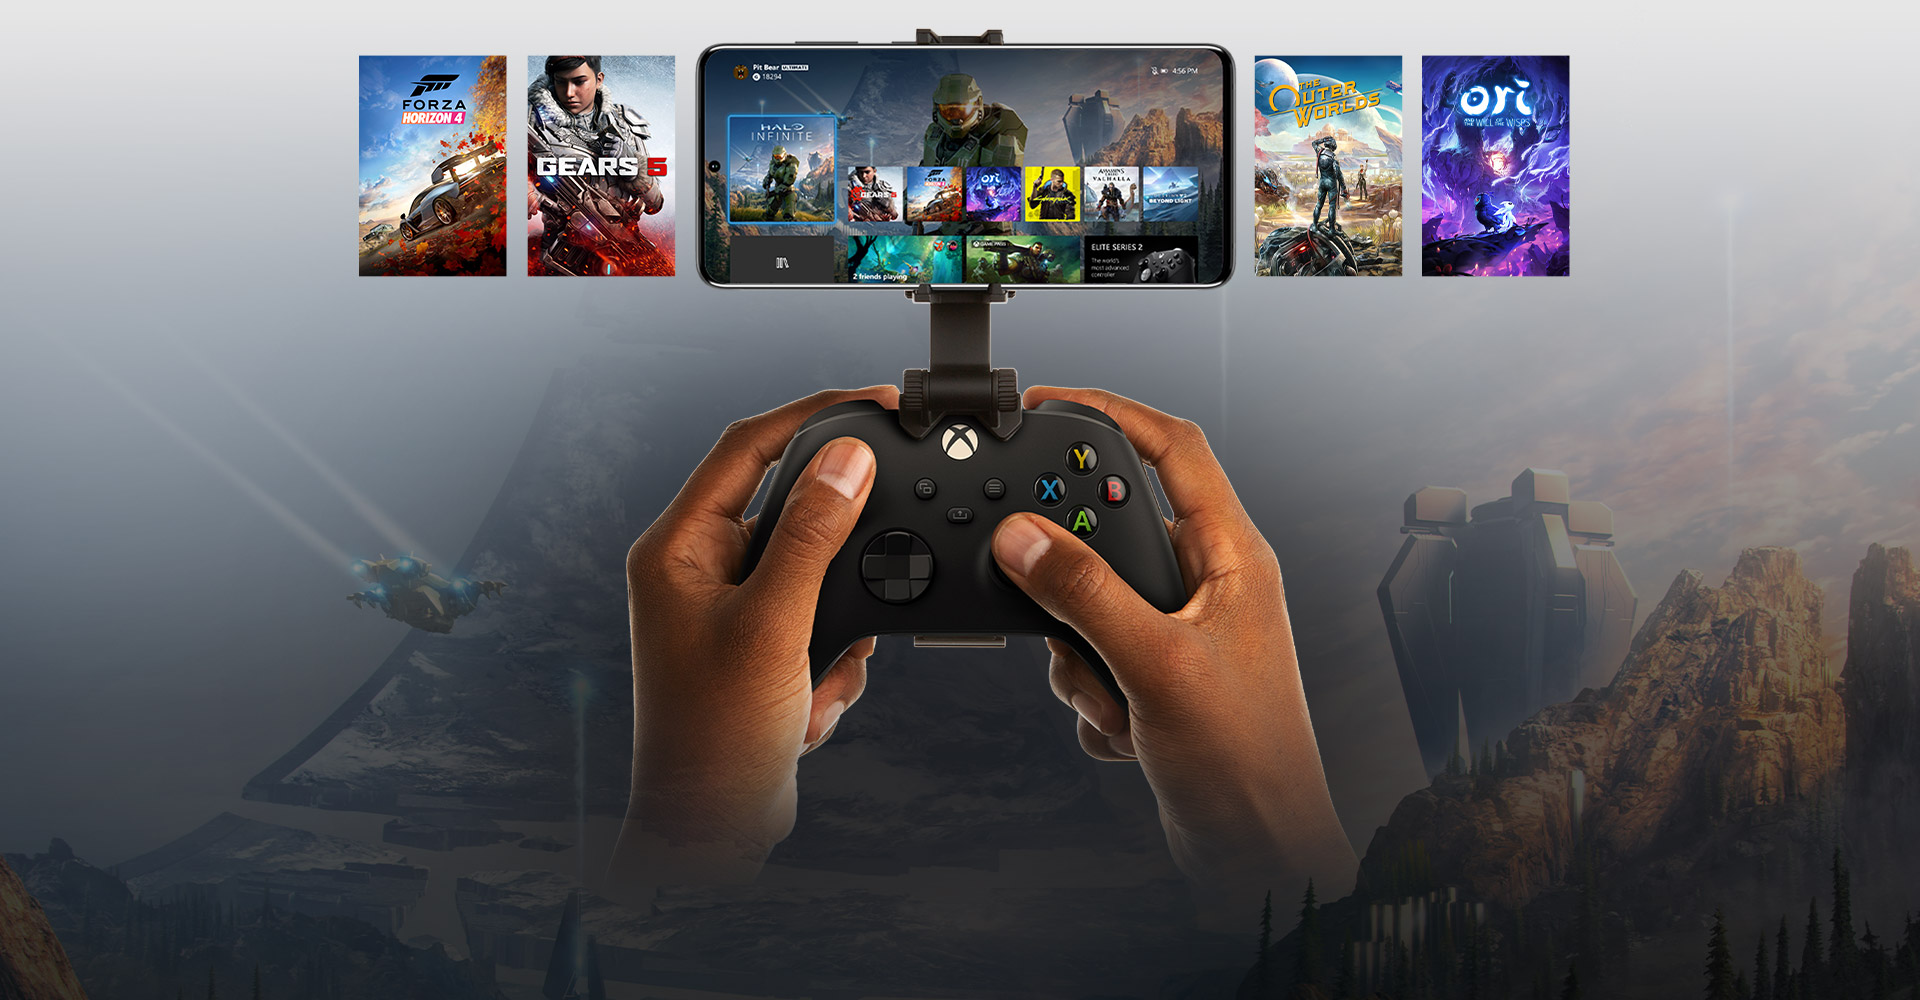 將行動裝置連接到 Xbox 控制器，其中顯示可供暢玩的遊戲選項。Halo Infinite 的世界不再侷限於手機。